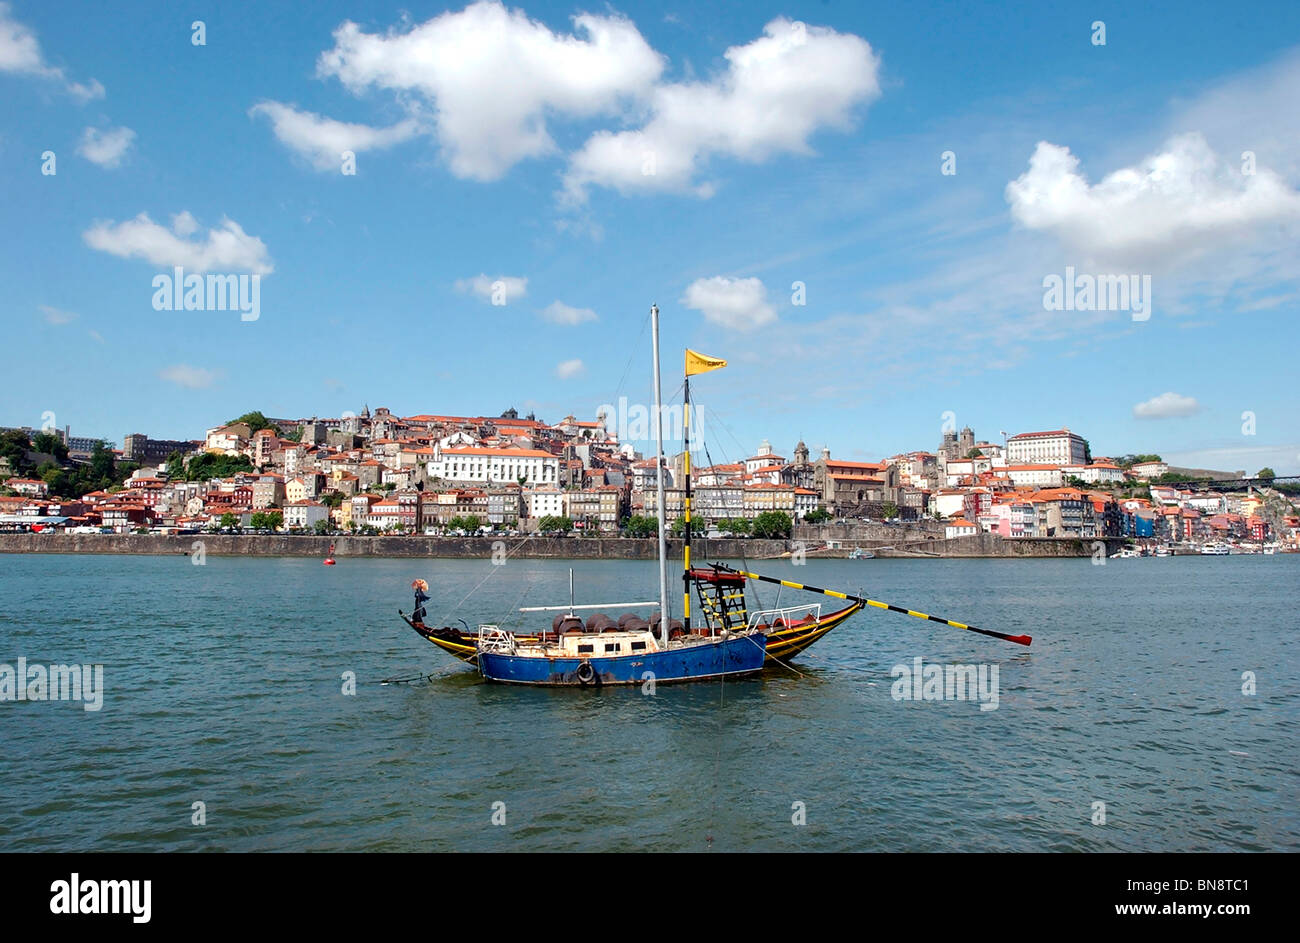 Rabelo boat, Oporto, Portugal Stock Photo